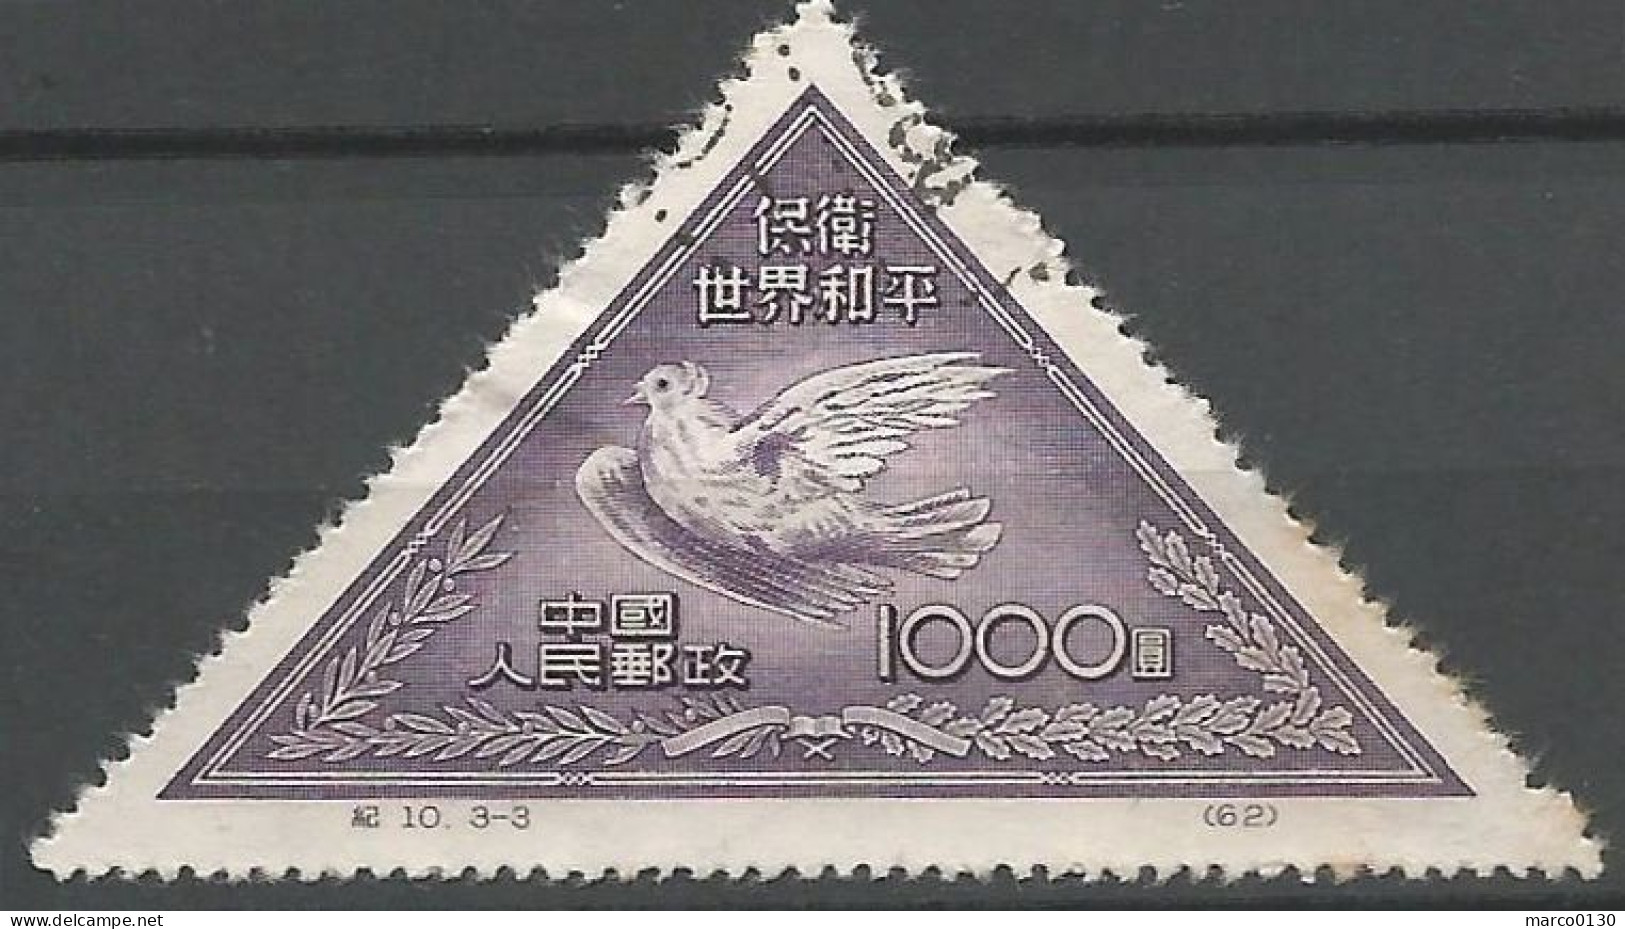 CHINE N° 904 + N° 905 + N° 906 OBLITERE - Used Stamps